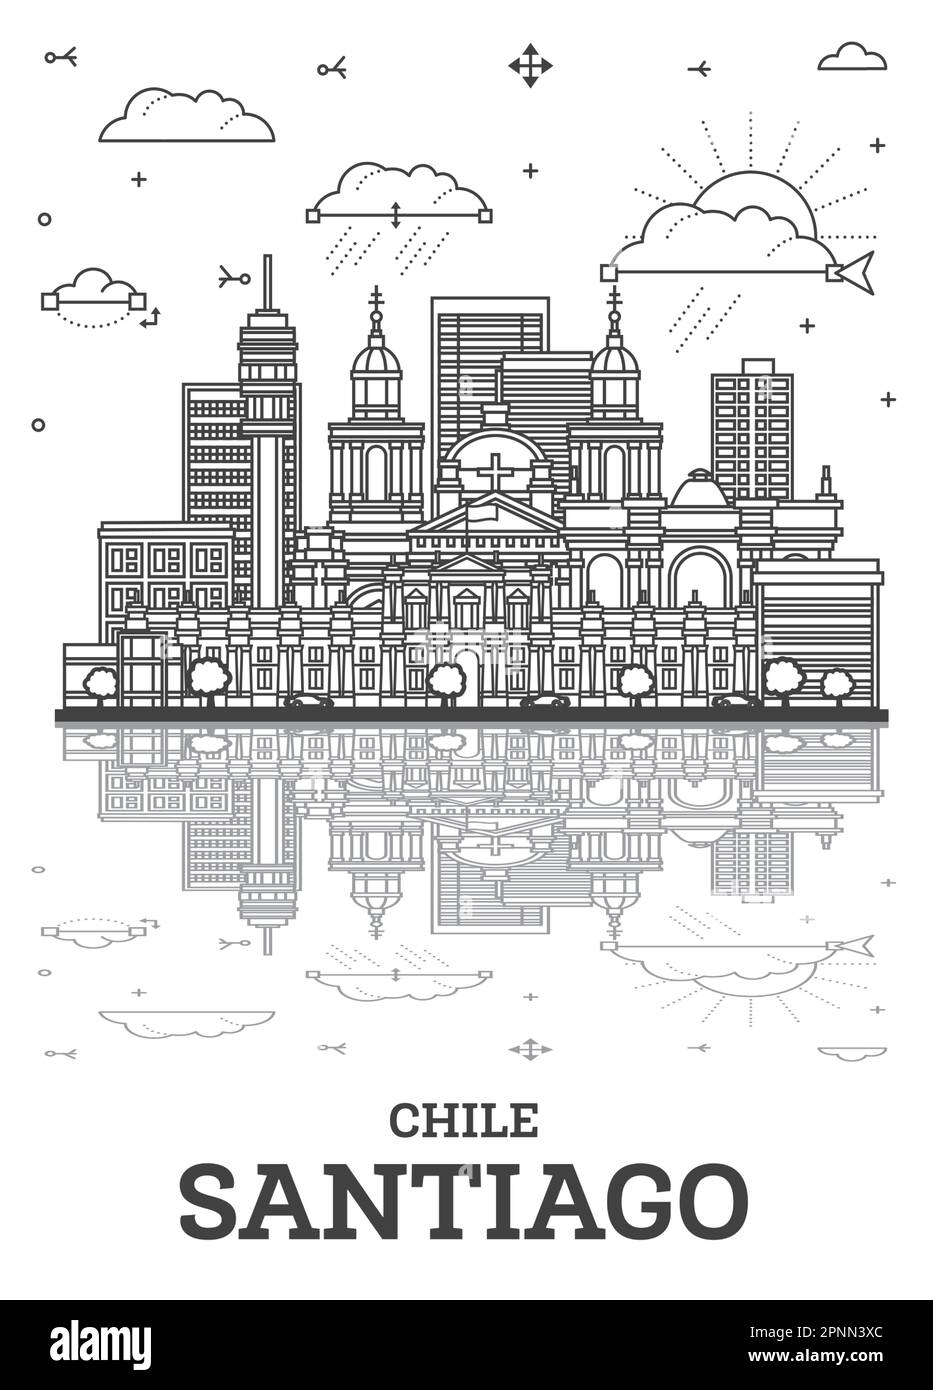 Skizzieren Sie die Skyline von Santiago Chile mit modernen Gebäuden und Reflektionen, die auf Weiß isoliert sind. Vektorgrafik. Stadtbild von Santiago mit Wahrzeichen. Stock Vektor